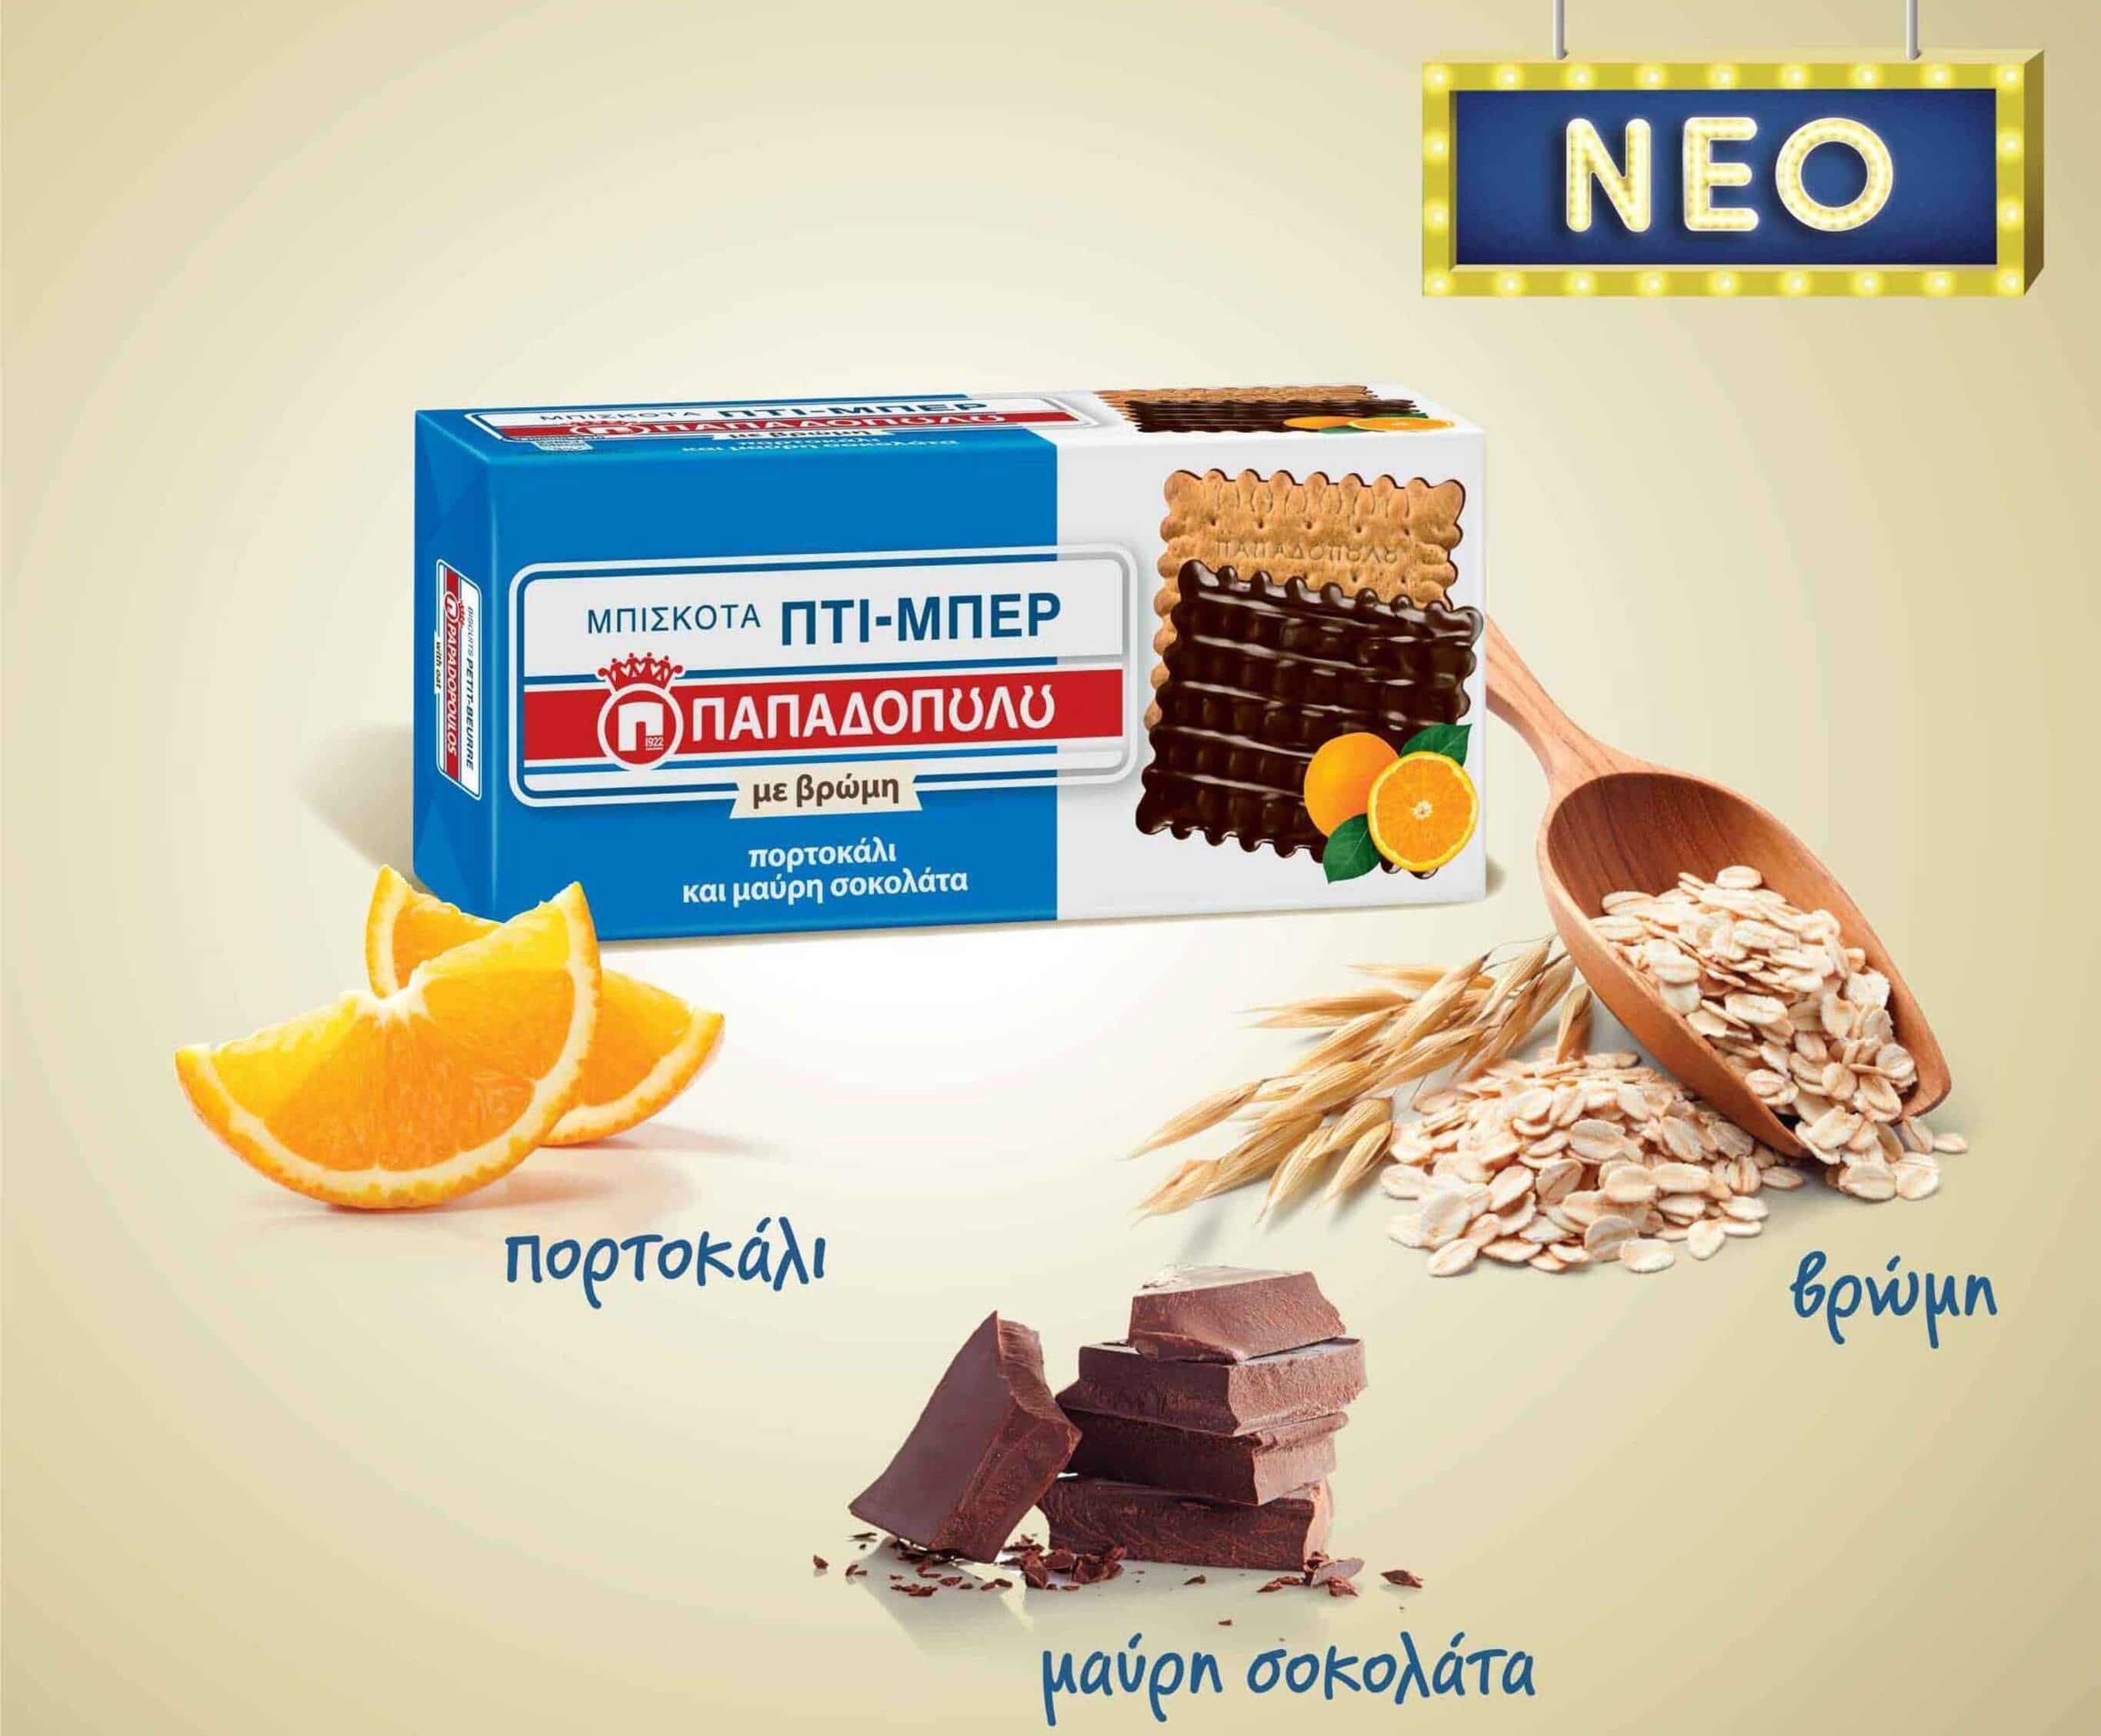 Featured image for Nέα Πτι-Μπερ Παπαδοπούλου με βρώμη, πορτοκάλι και μαύρη σοκολάτα.